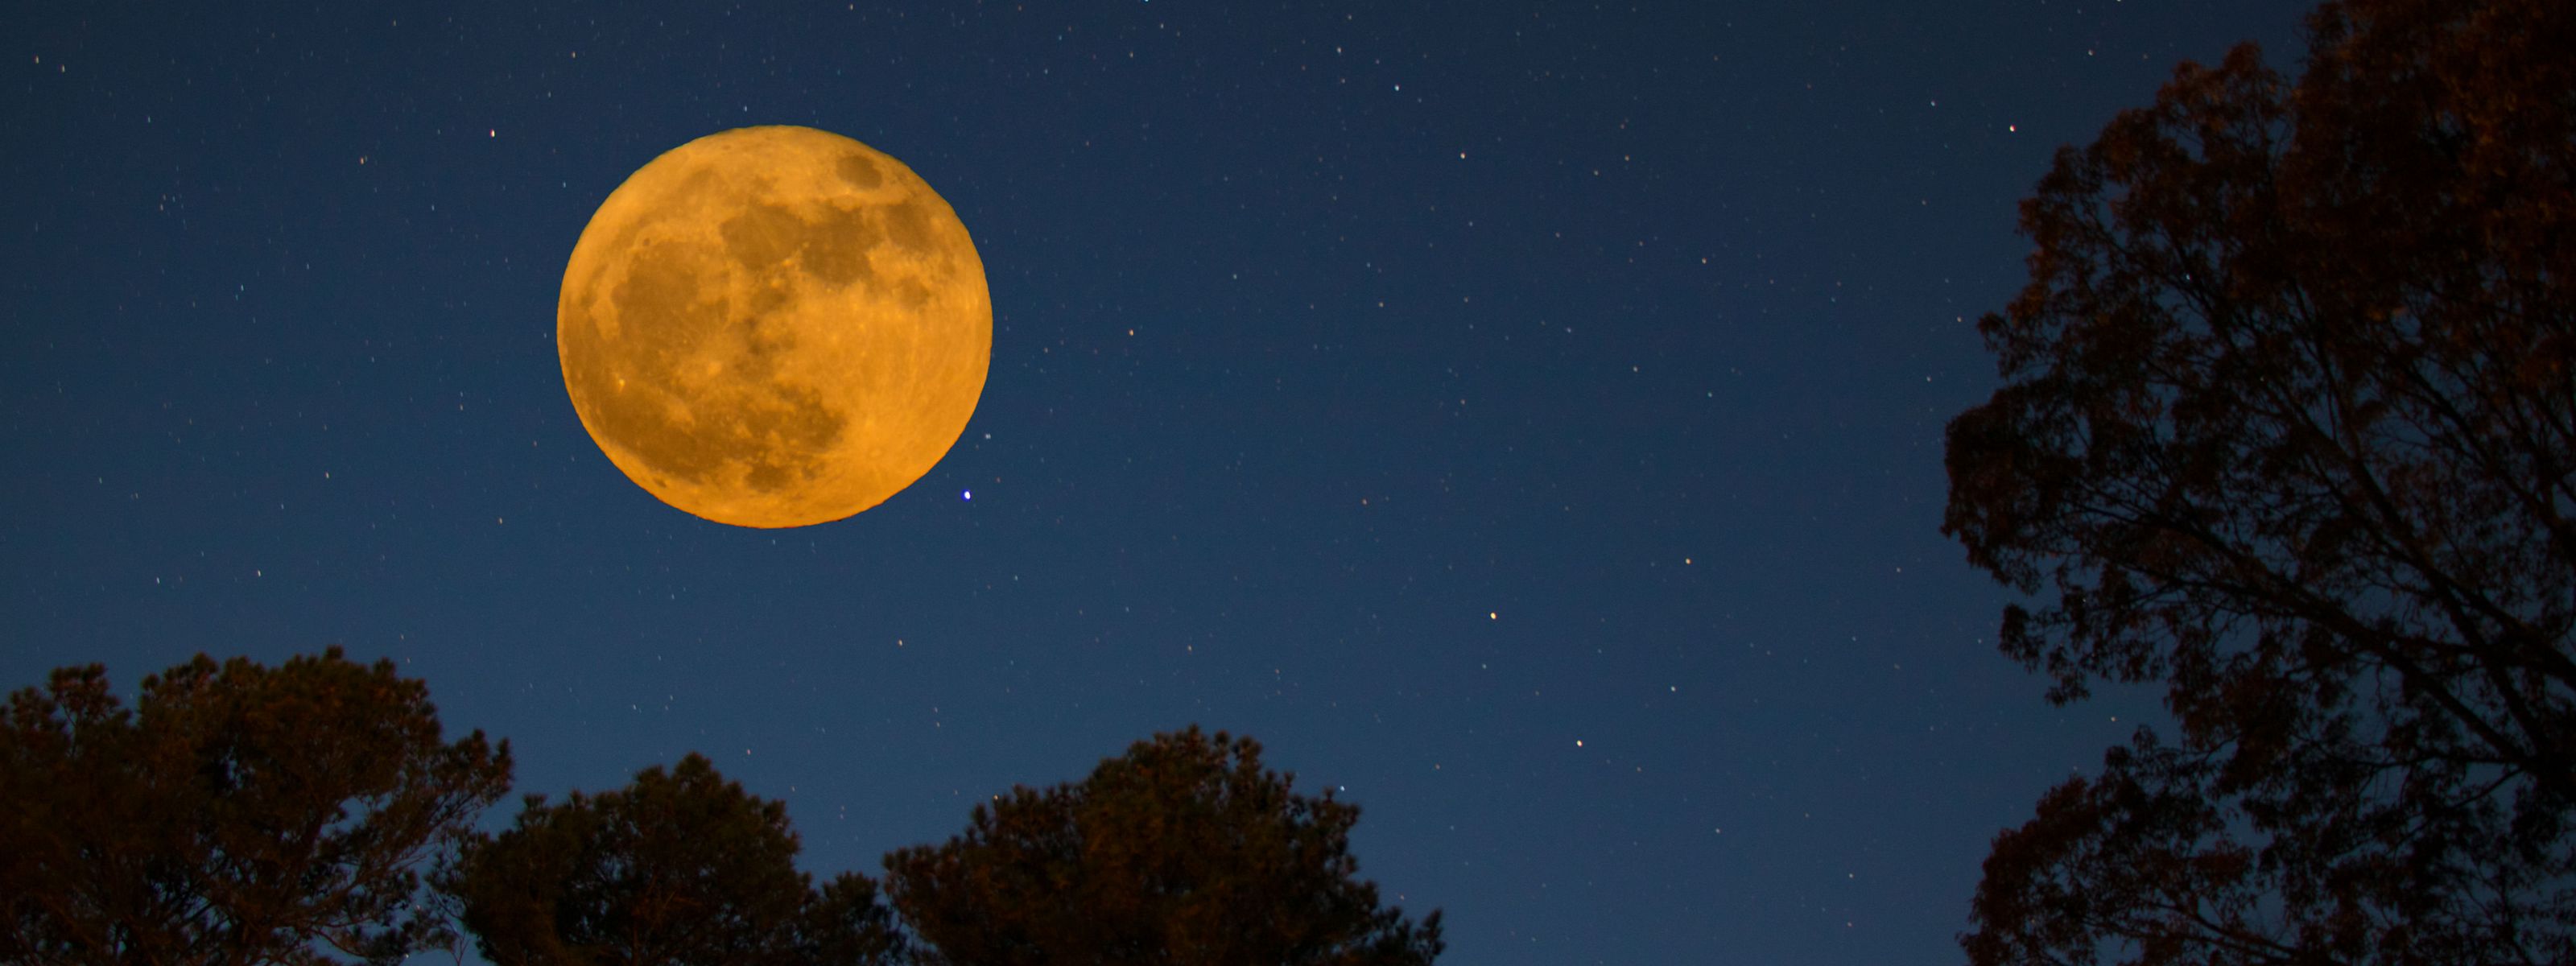 Super luna vista desde la costa este de Virginia, EE.UU.